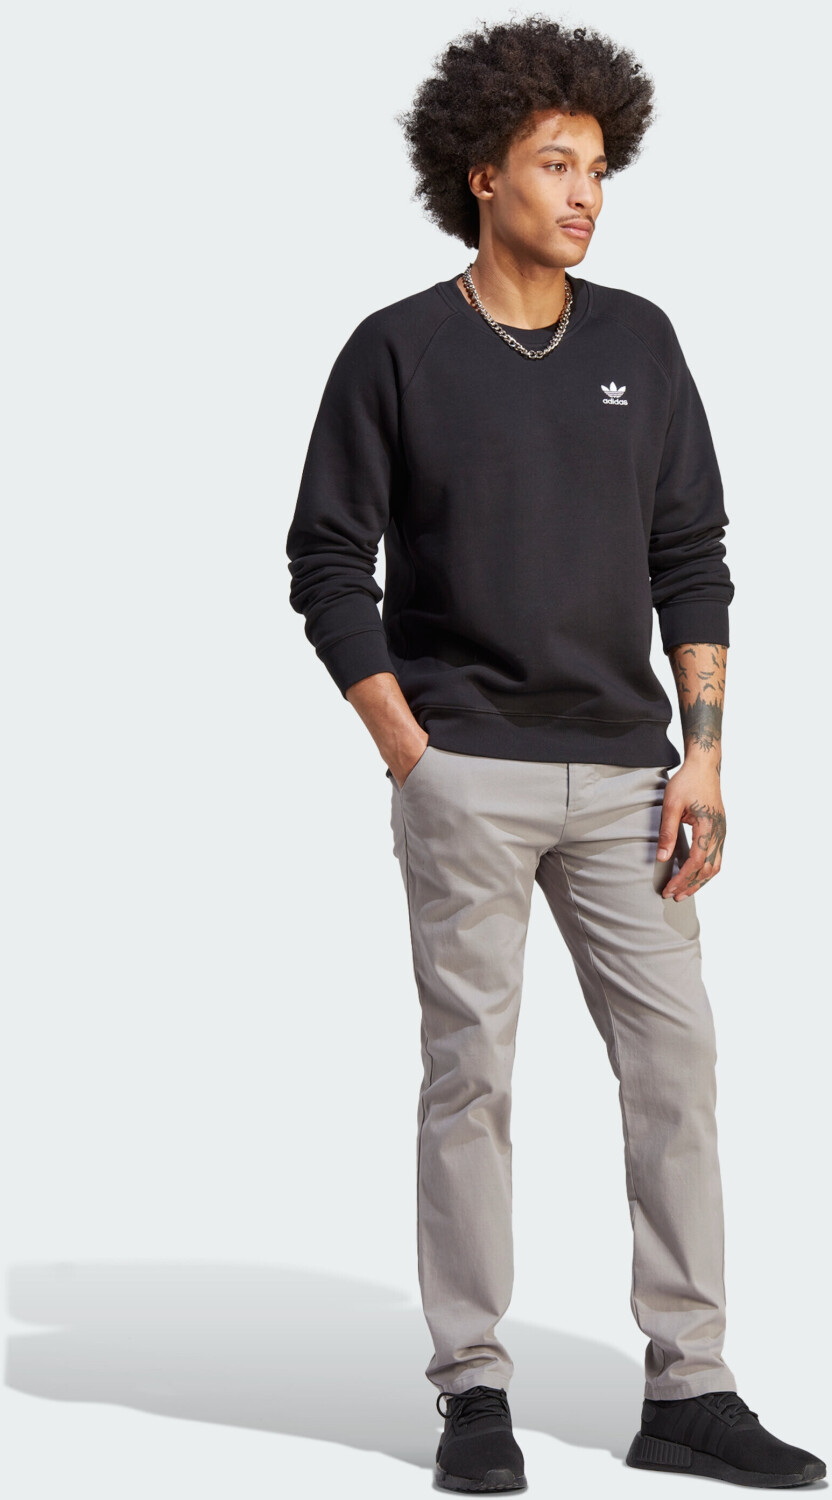 bei € 43,86 Essentials Man Trefoil black Sweatshirt (IM4532) ab | Adidas Preisvergleich